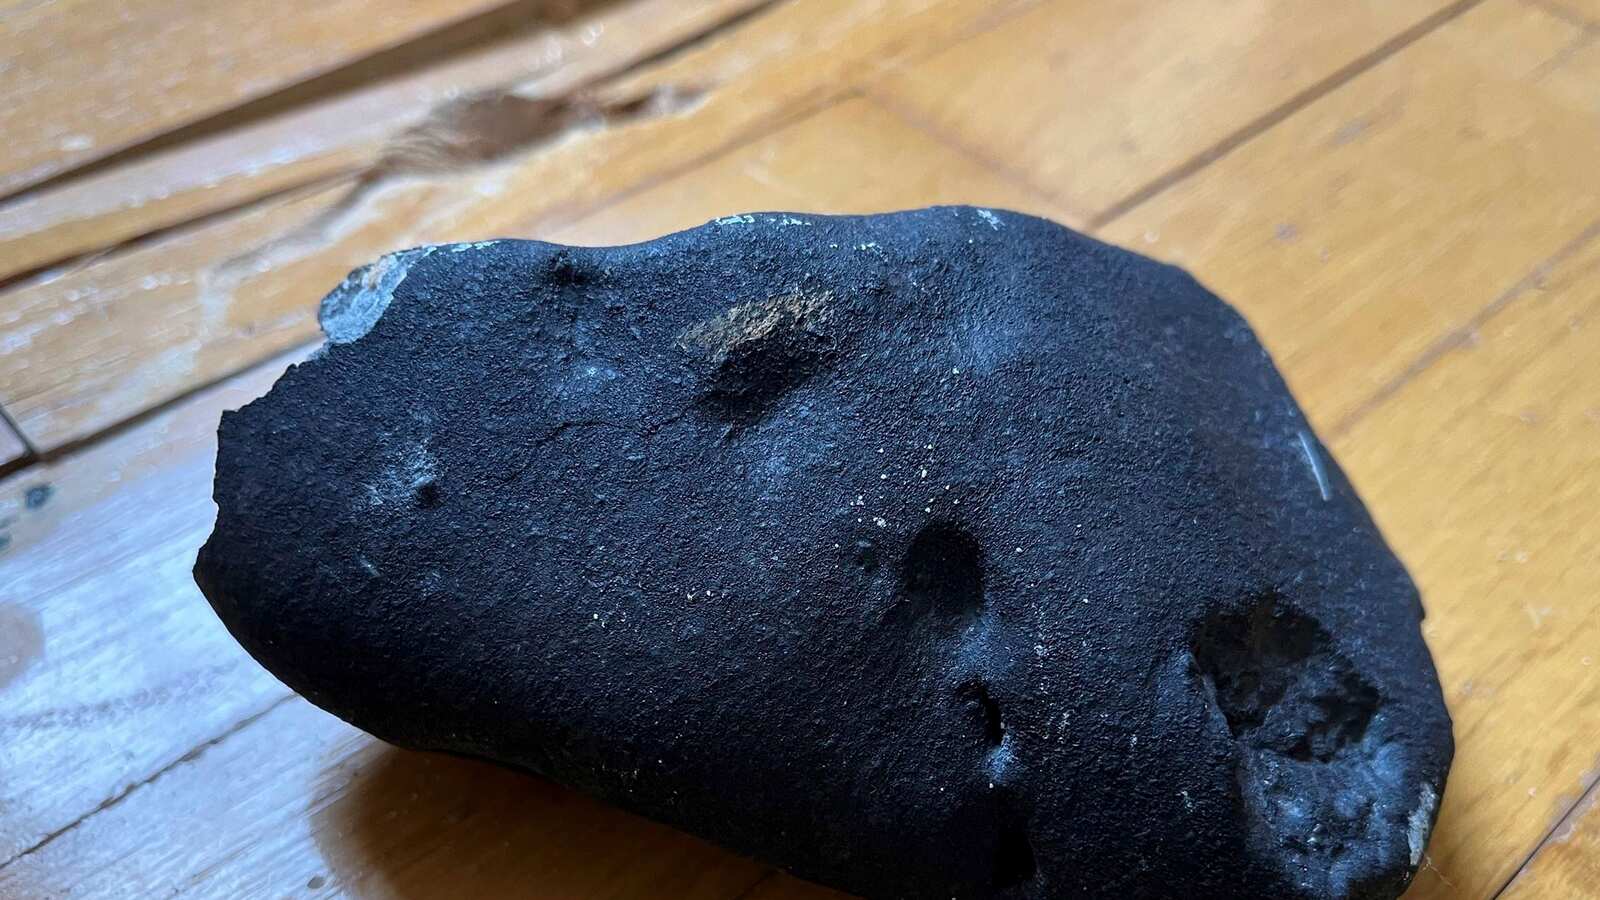 Colpo di meteorite!  Gli scienziati confermano l’identità dell’oggetto metallico che si è schiantato contro una casa americana